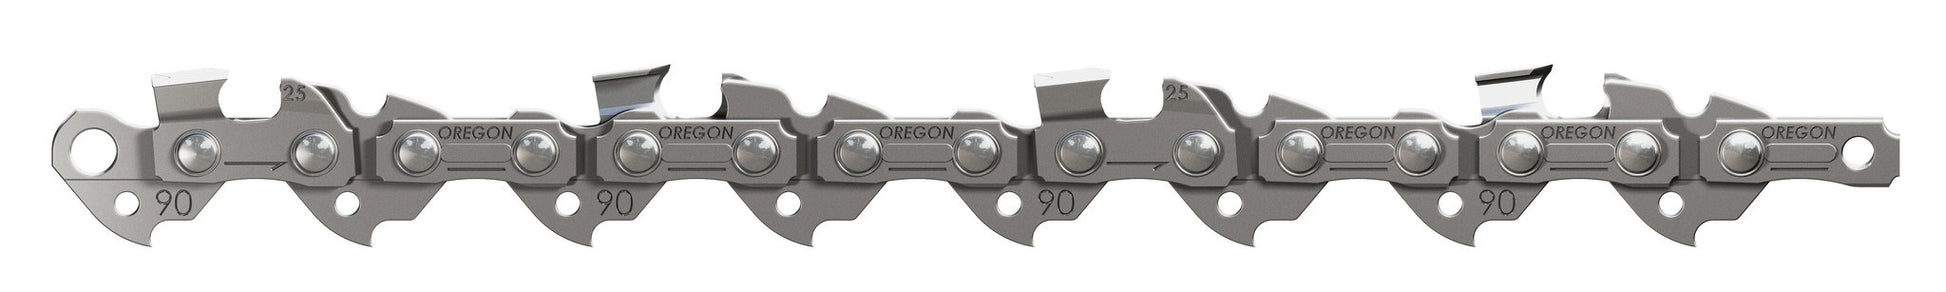 Ryobi OCS1830 Chainsaw Chain 12" (30cm) - Oregon 90PX045XTT / 90PX045E 45 Drive LinksNewSawChains